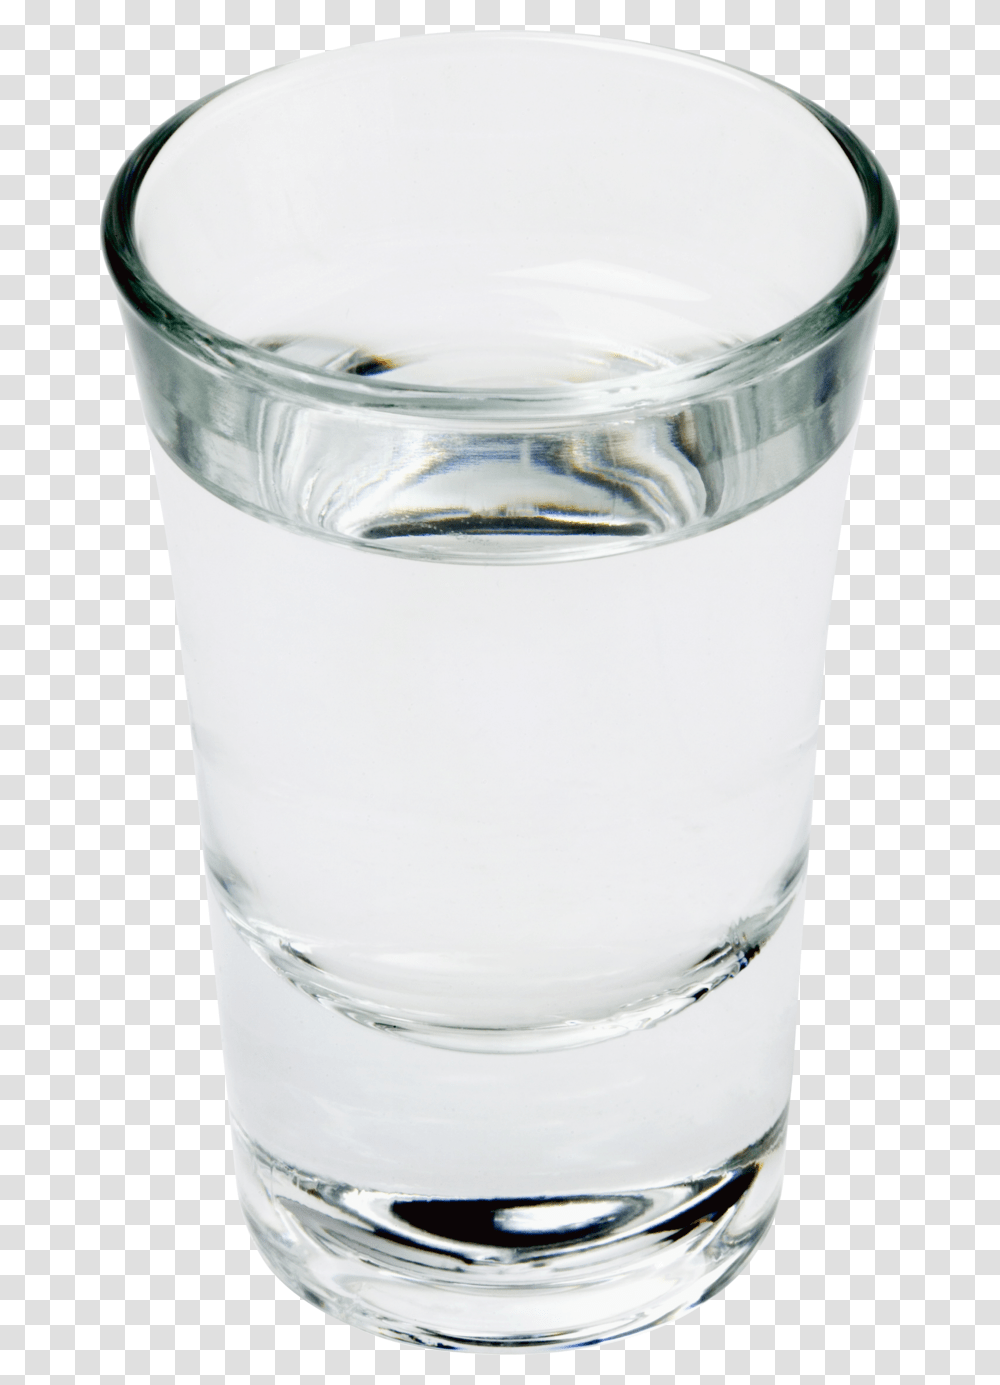 Shot Glass Cup Of Water, Milk, Beverage, Drink, Jar Transparent Png